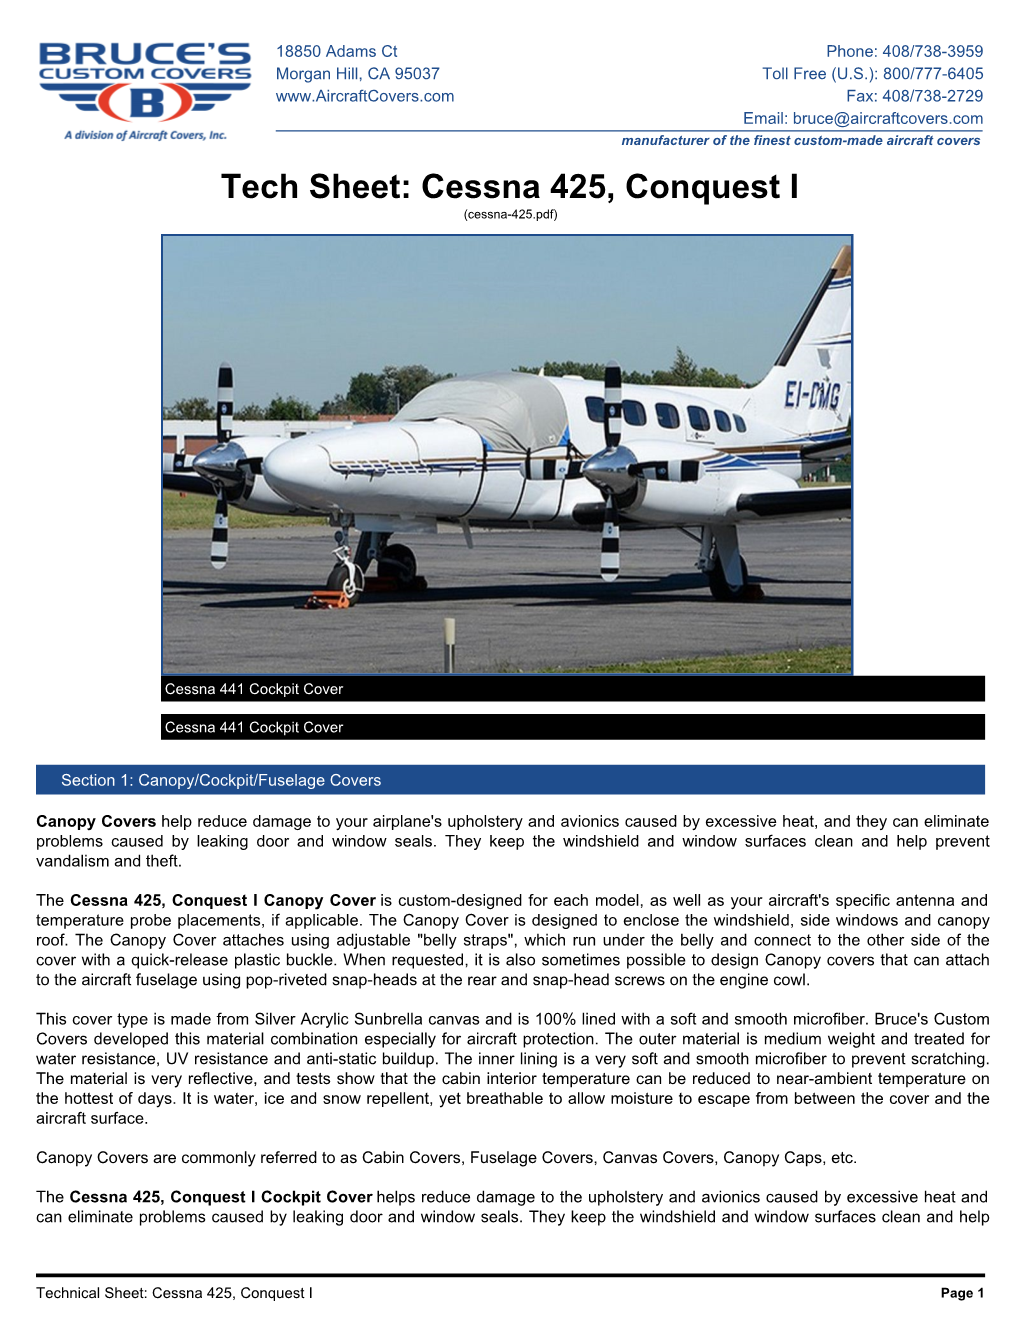 Cessna 425, Conquest I (Cessna-425.Pdf)